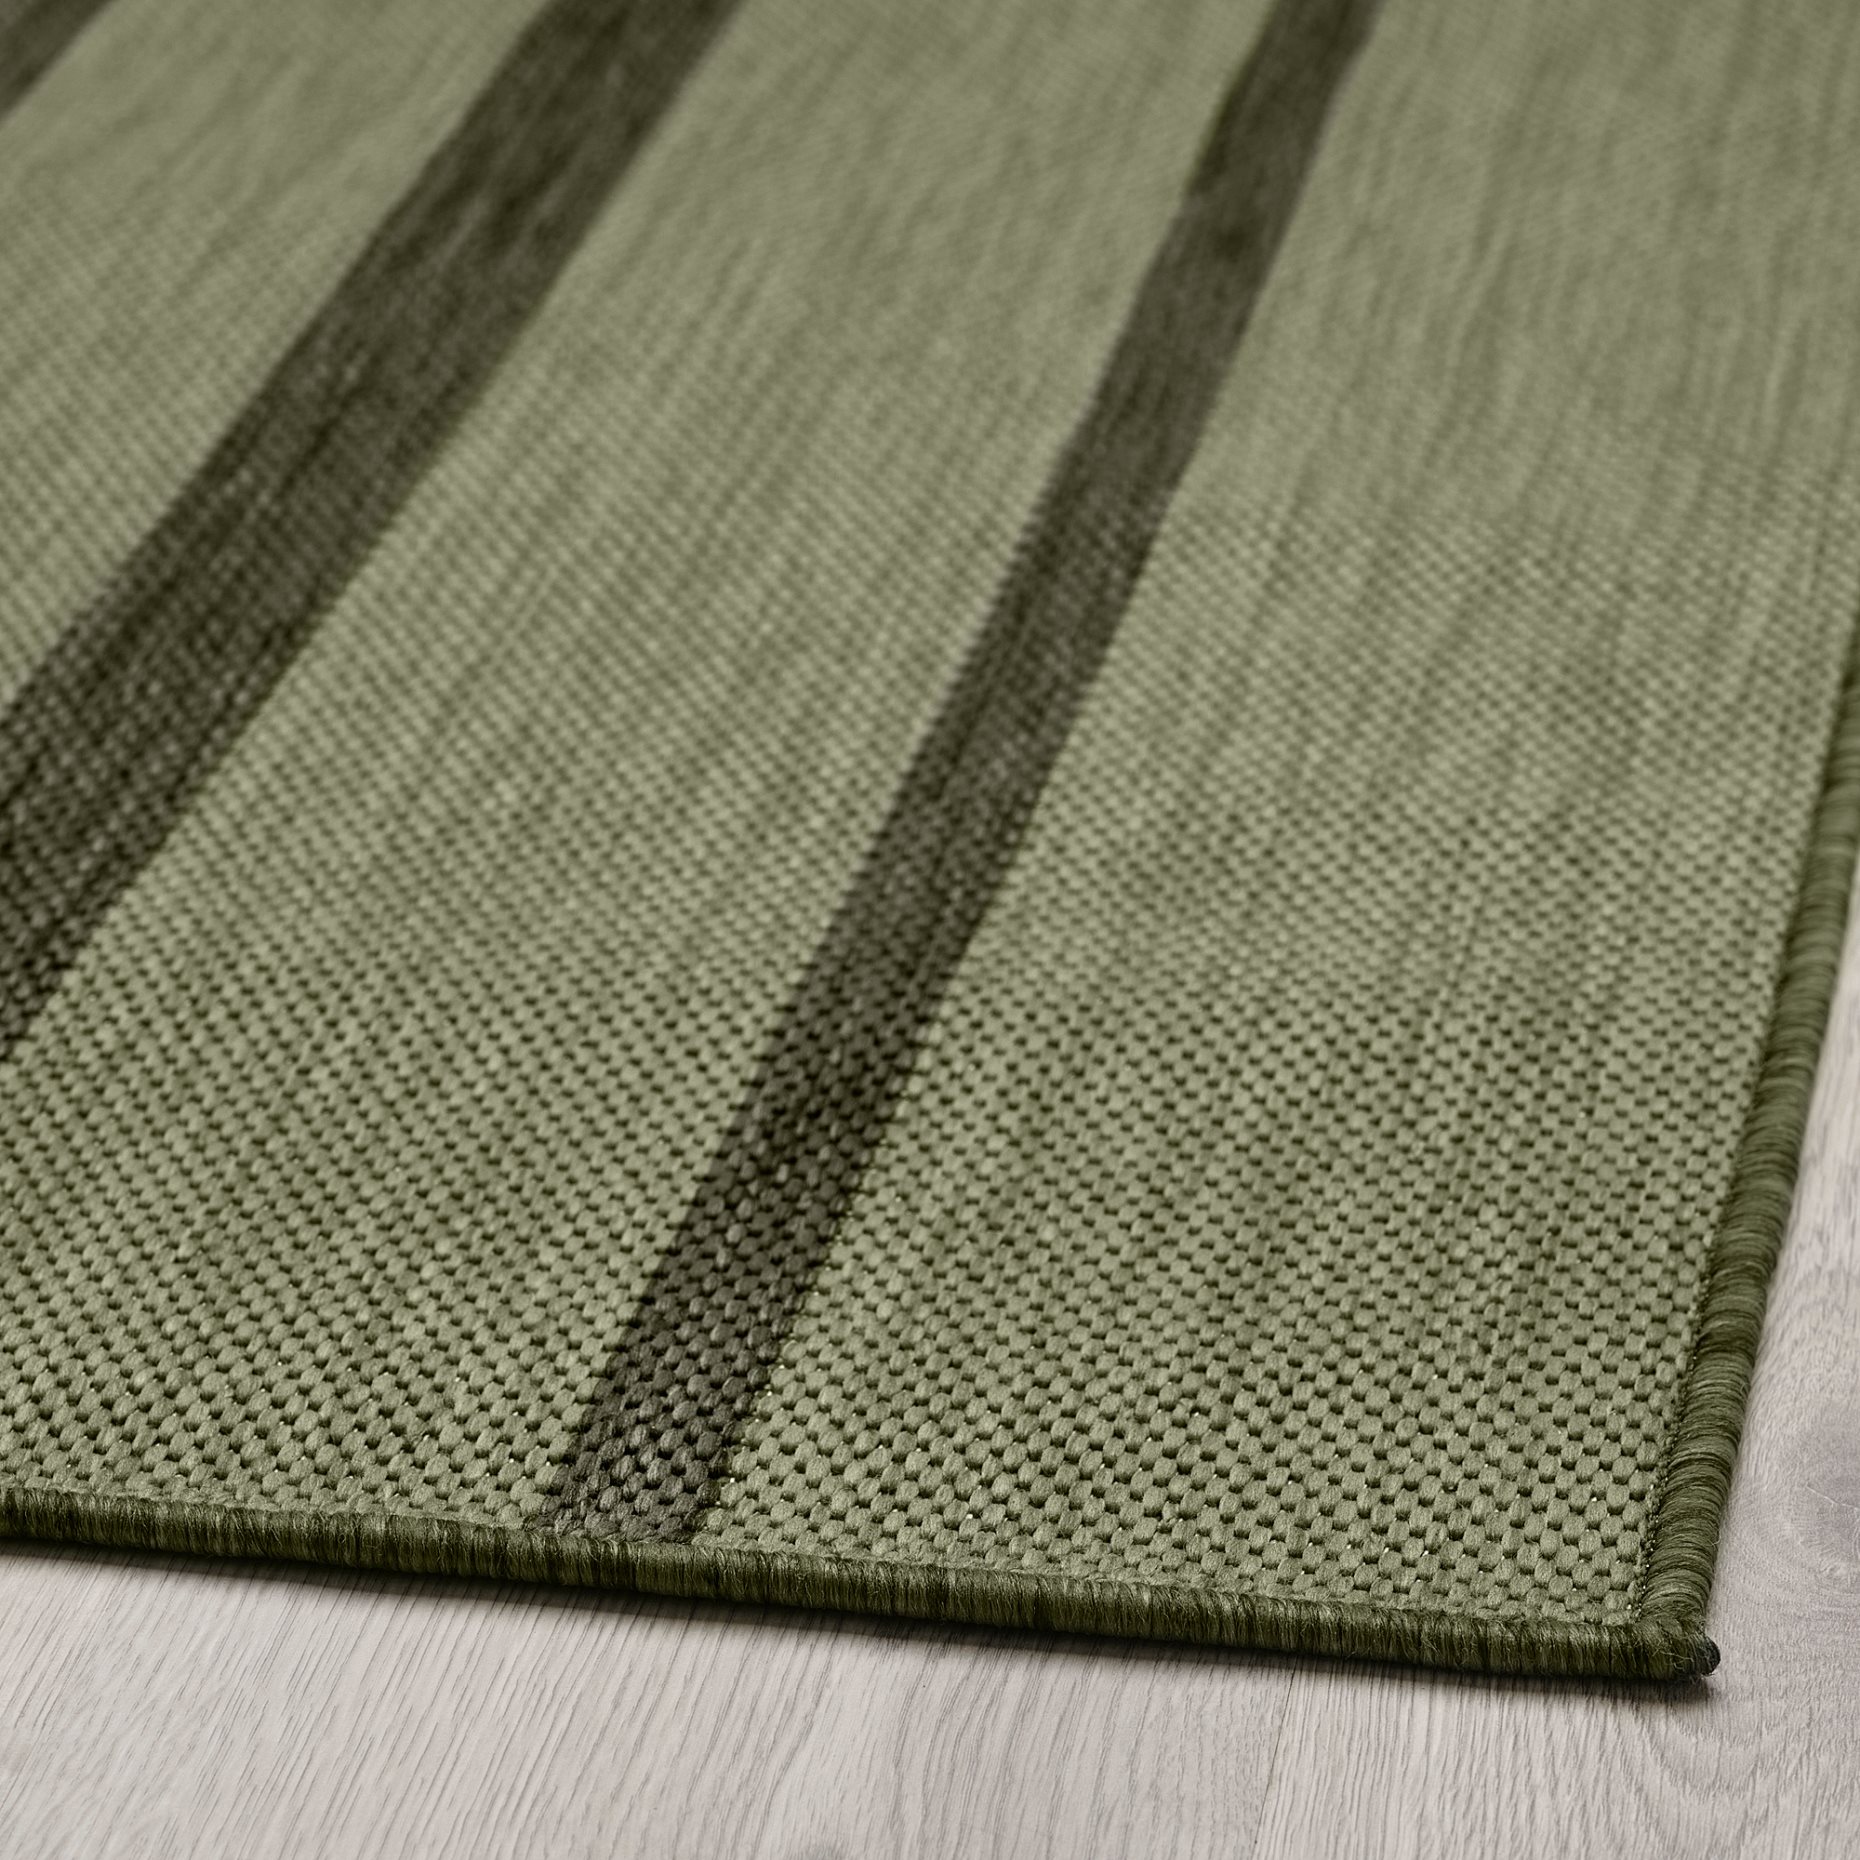 KANTSTOLPE, килим гладко тъкан, на откр/закрито, 505.693.20